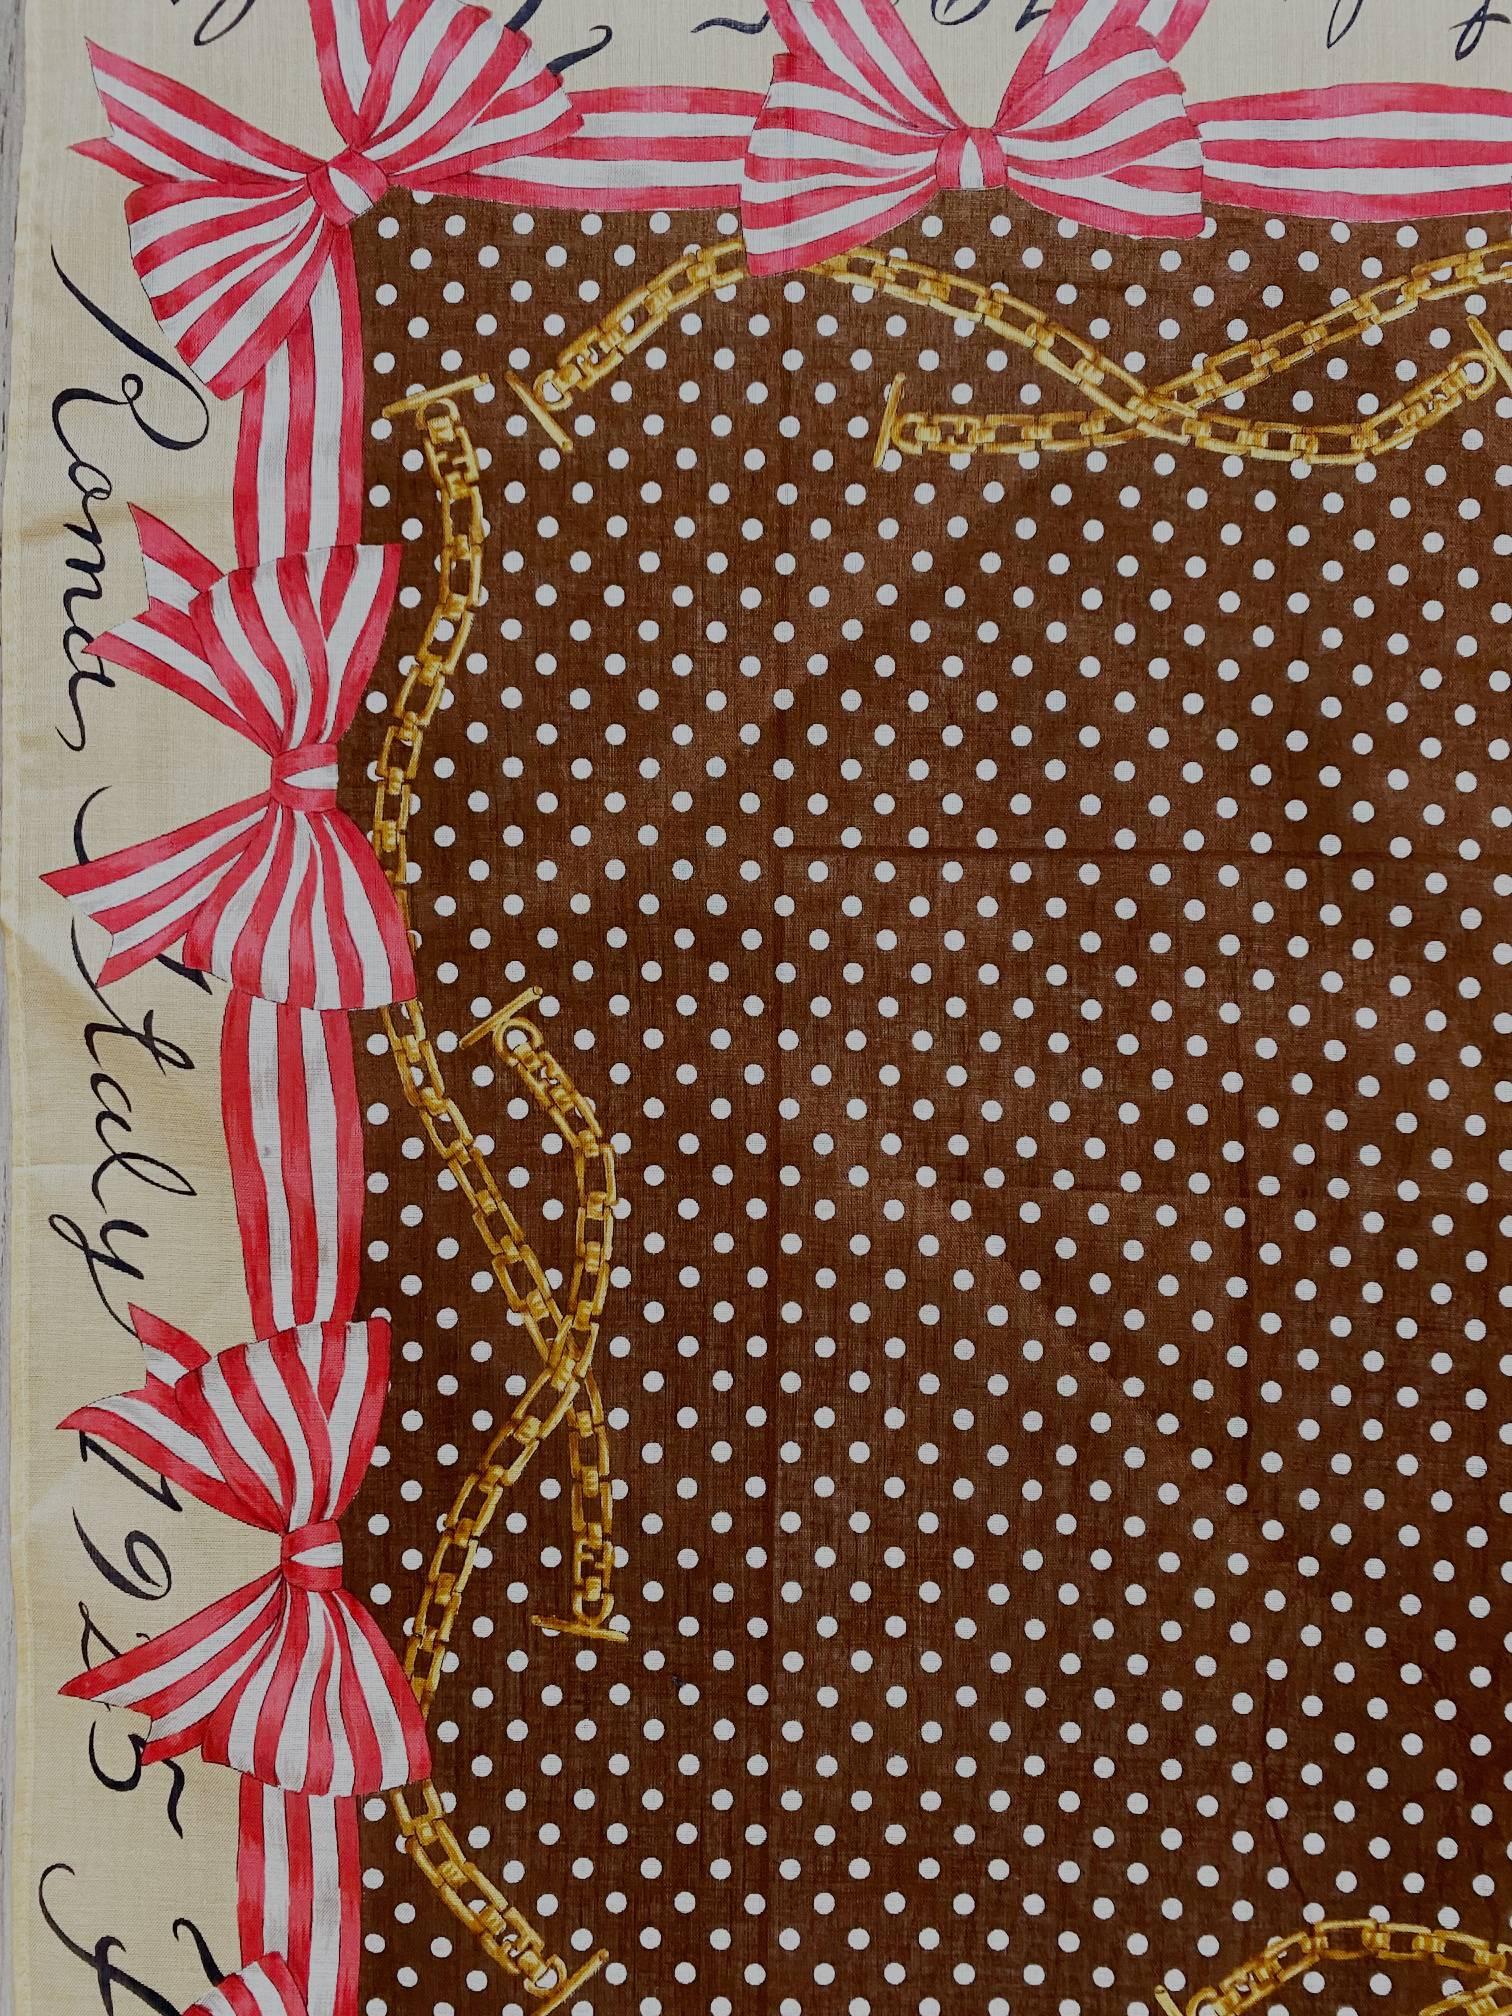 Cette écharpe Fendi Roma des années 2000 est réalisée en coton et présente un motif de nœuds roses sur des pointillés bruns. Fabriquée en Italie.

Dimensions : 32x32cm 

Condition : 2000s, vintage, très bon, avec étiquettes autocollantes 